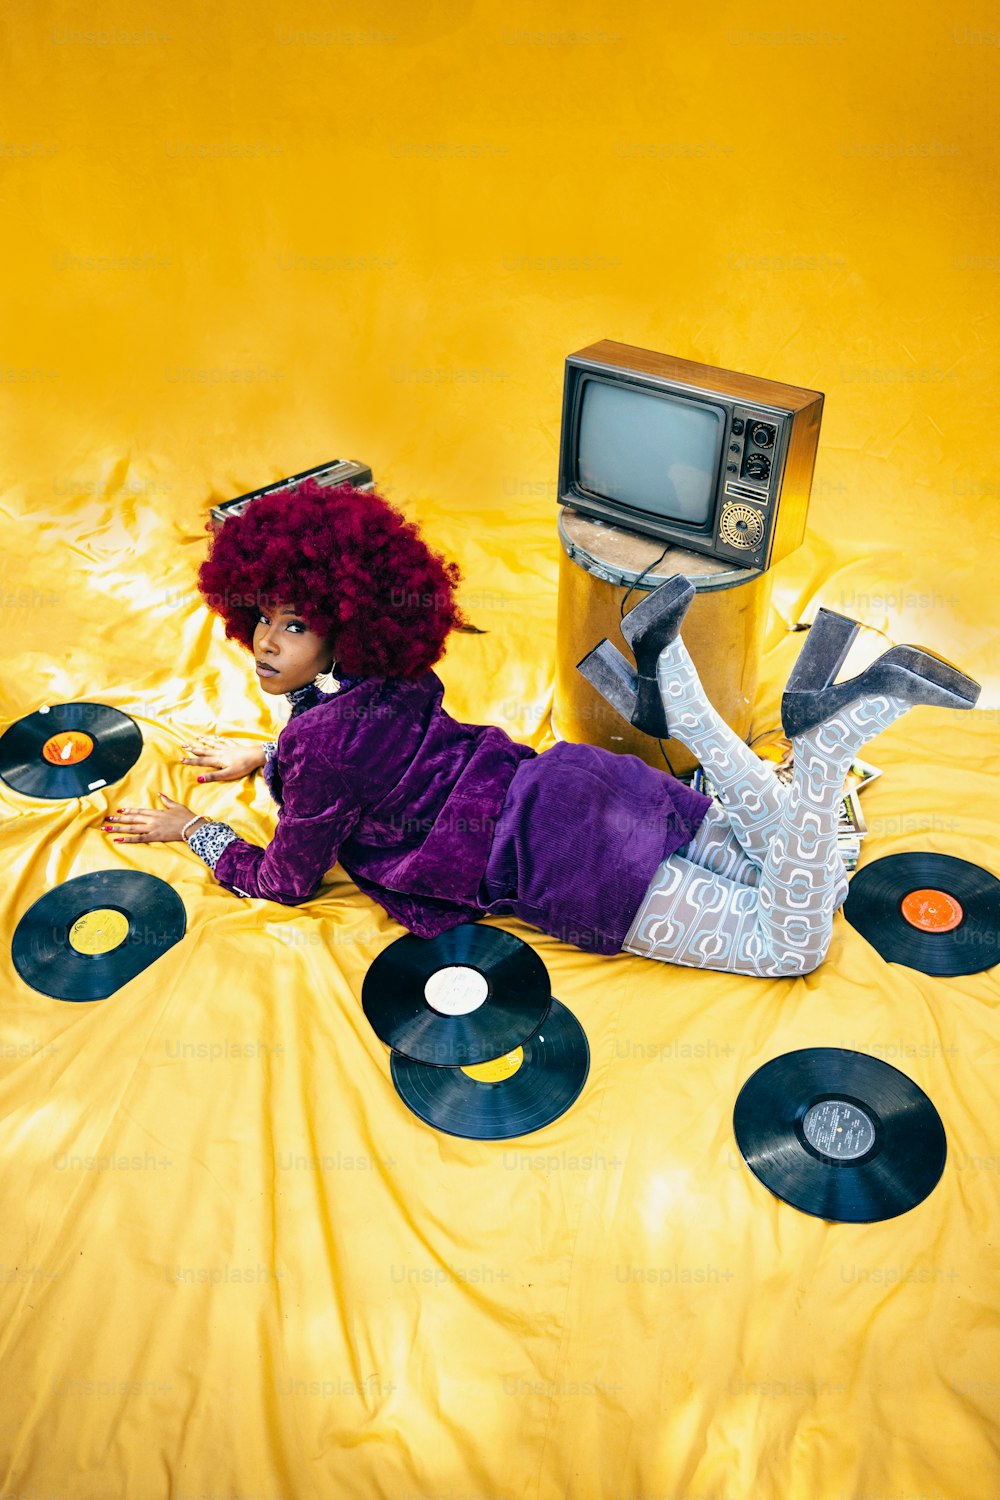 una mujer acostada encima de una cama cubierta de discos